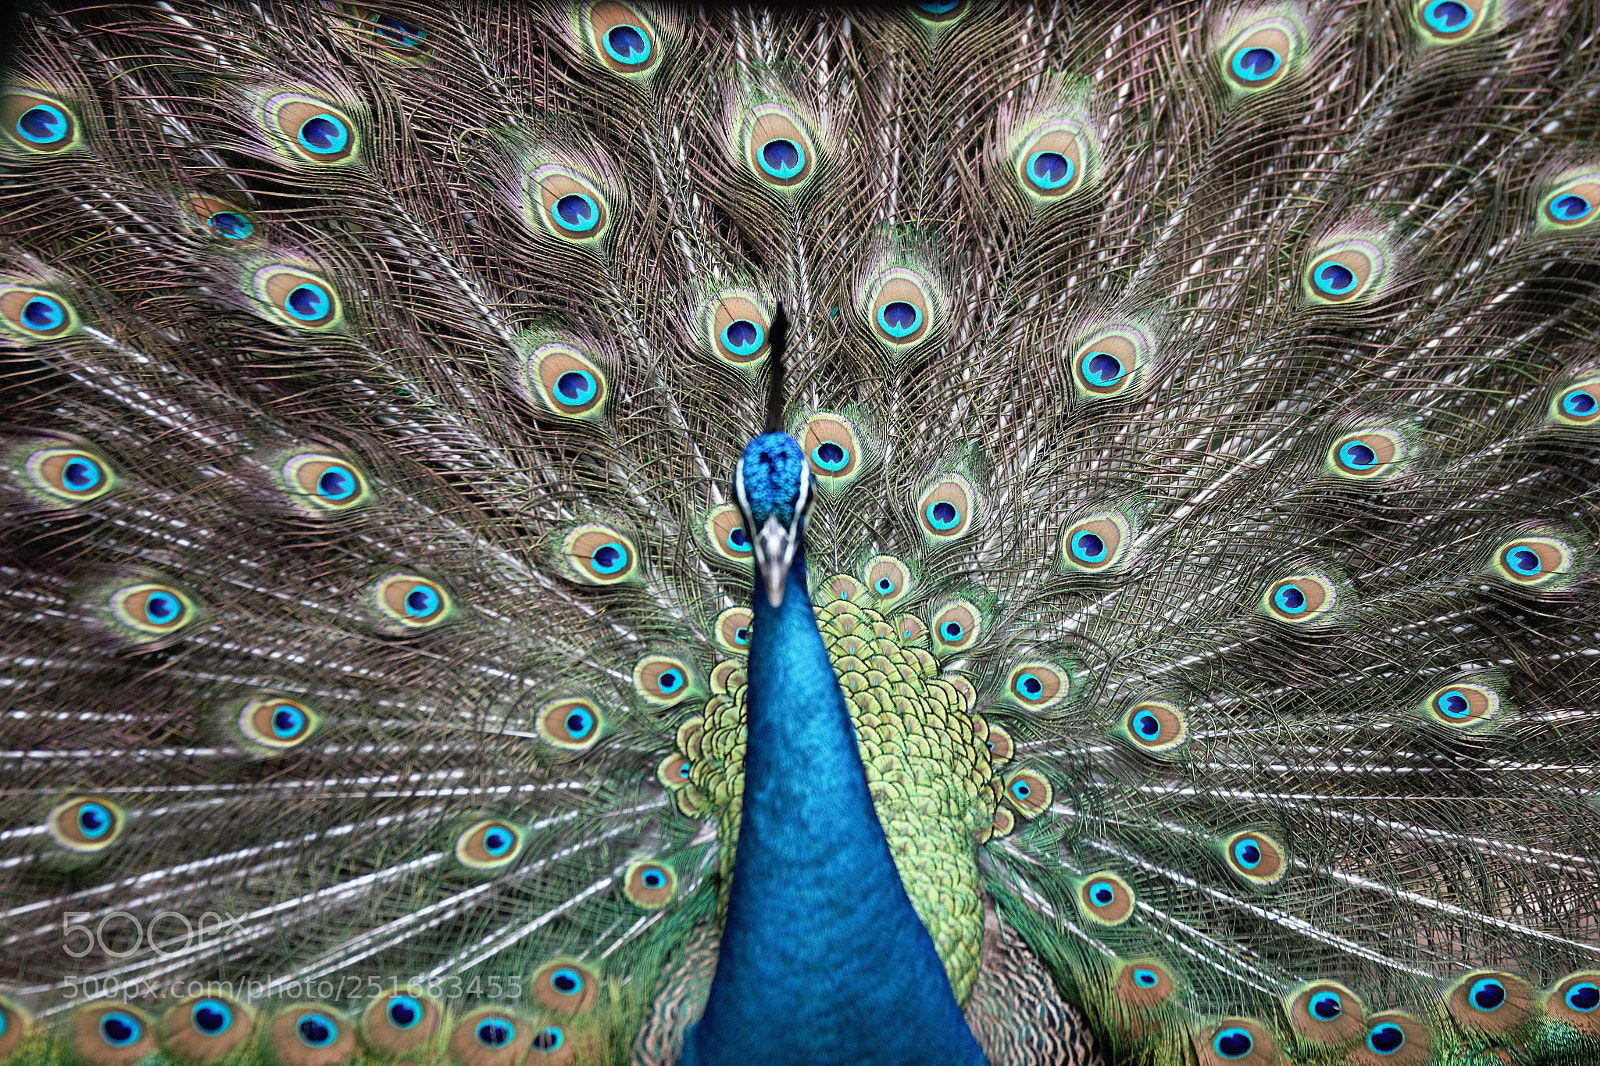 Canon EOS 70D sample photo. Peacock photography